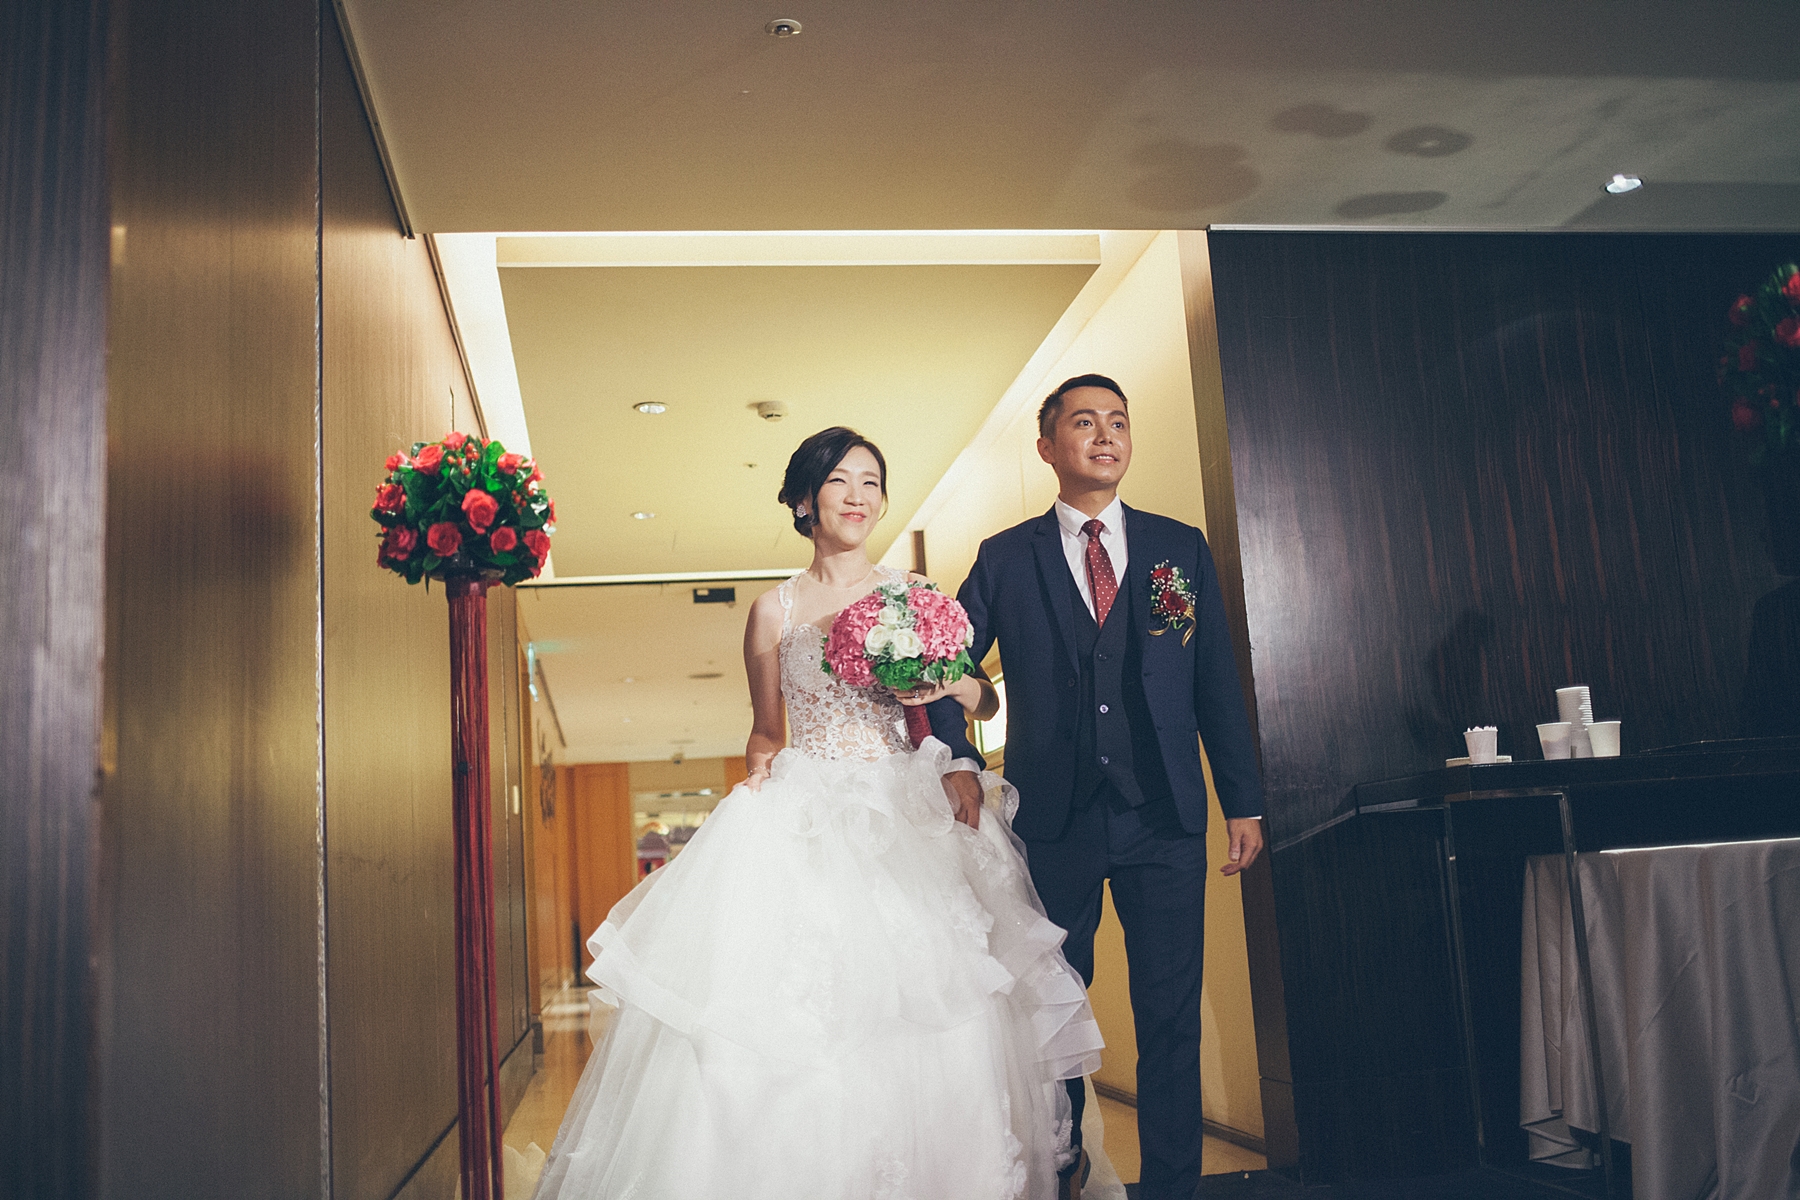 婚禮攝影,婚攝,婚禮記錄,台北,喜來登大飯店,底片風格,自然